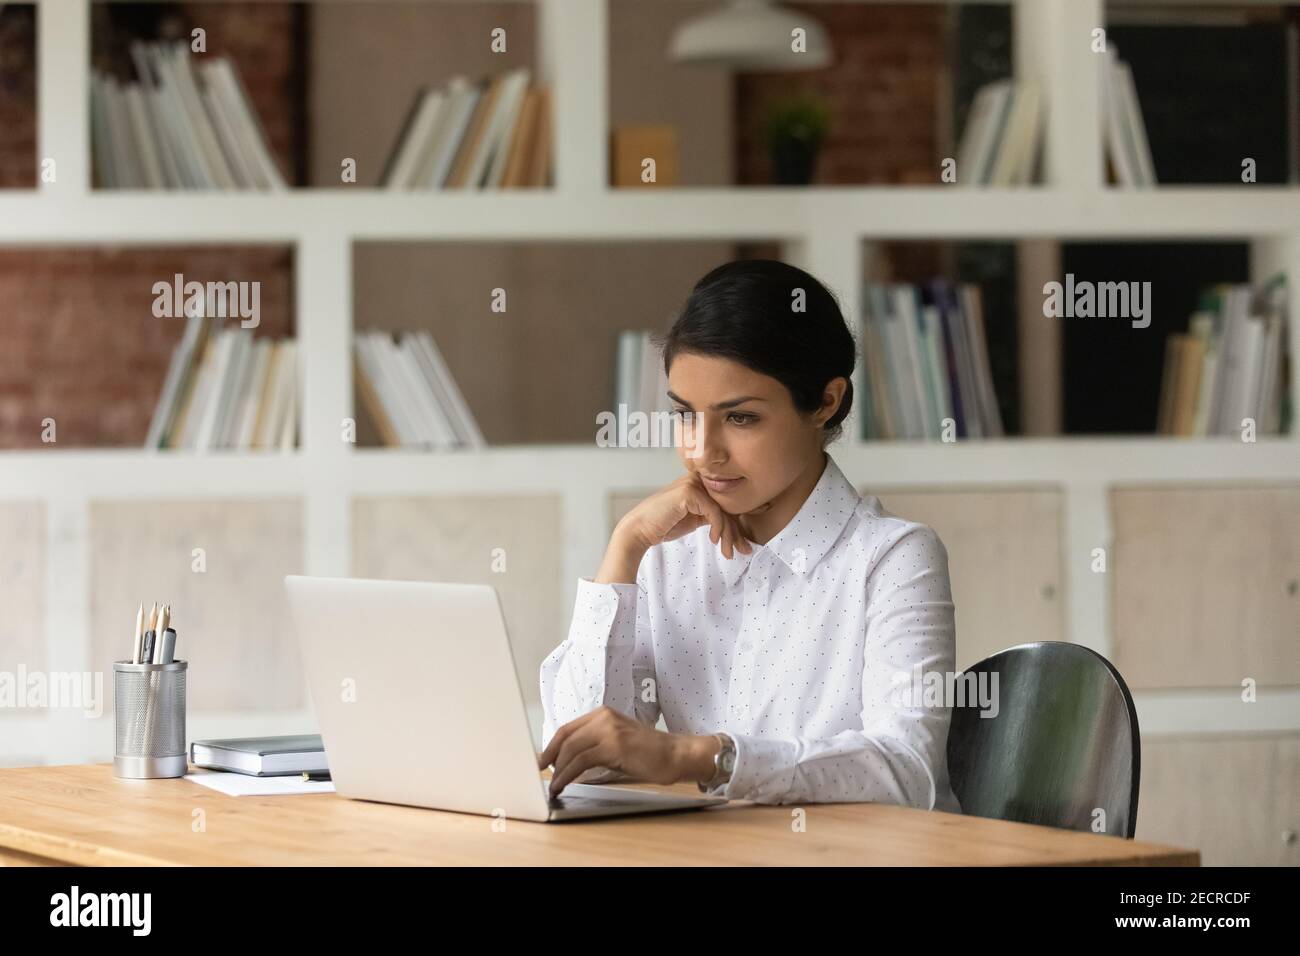 Une femme indienne pensive travaille sur un ordinateur portable Banque D'Images